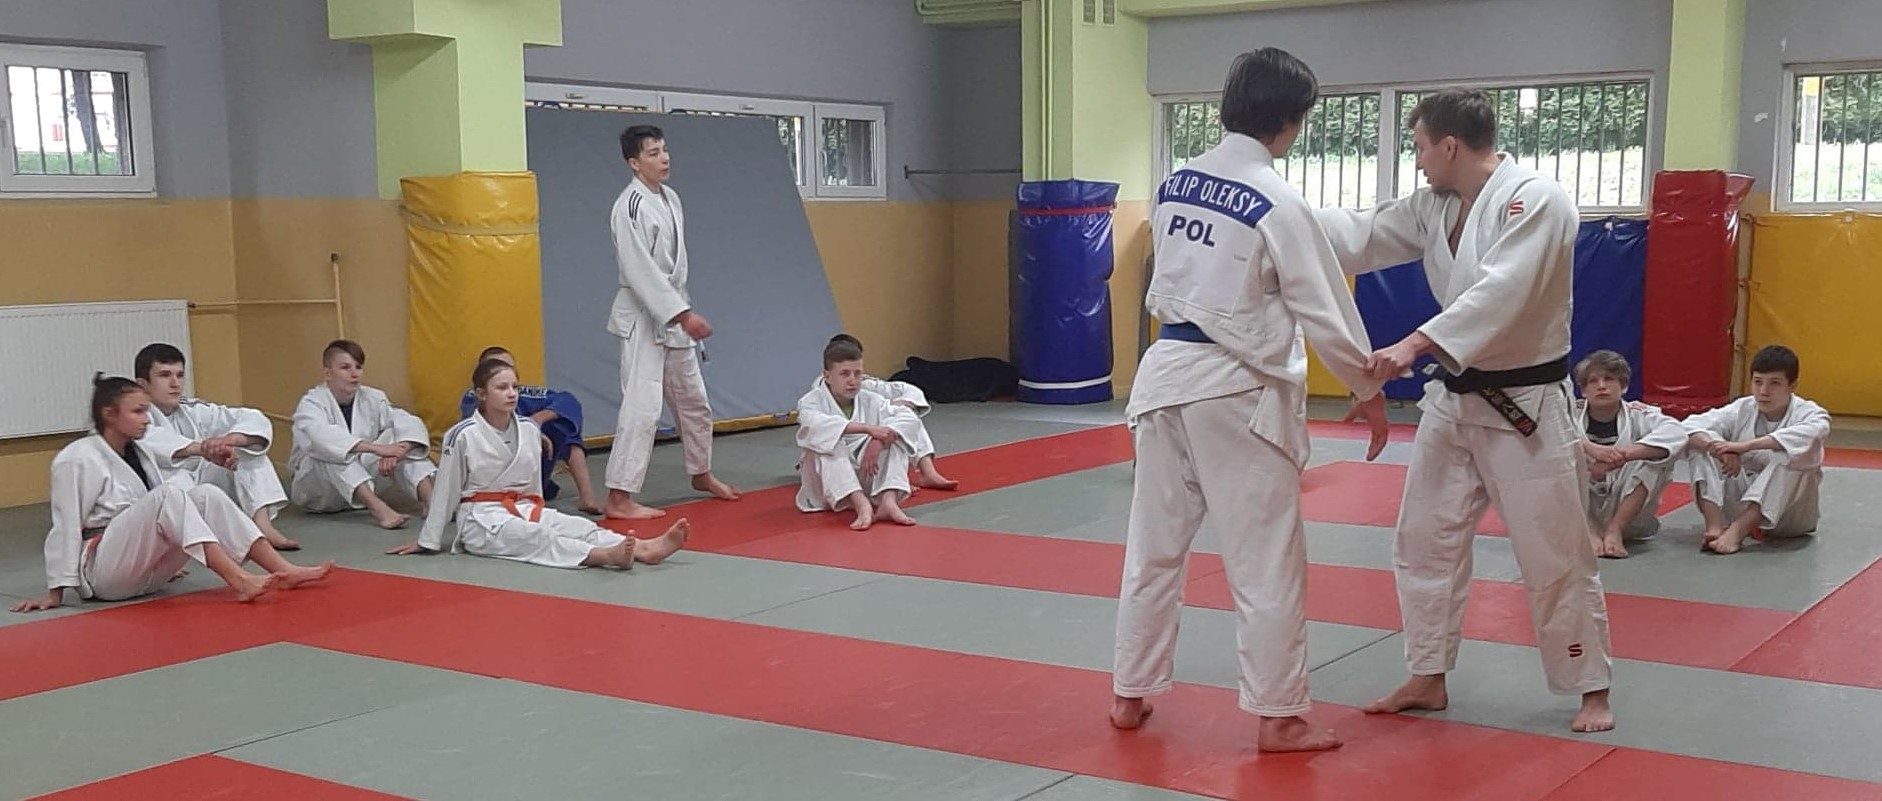 Drugie konsultacje szkoleniowe judo z Tomaszem Kowalskim